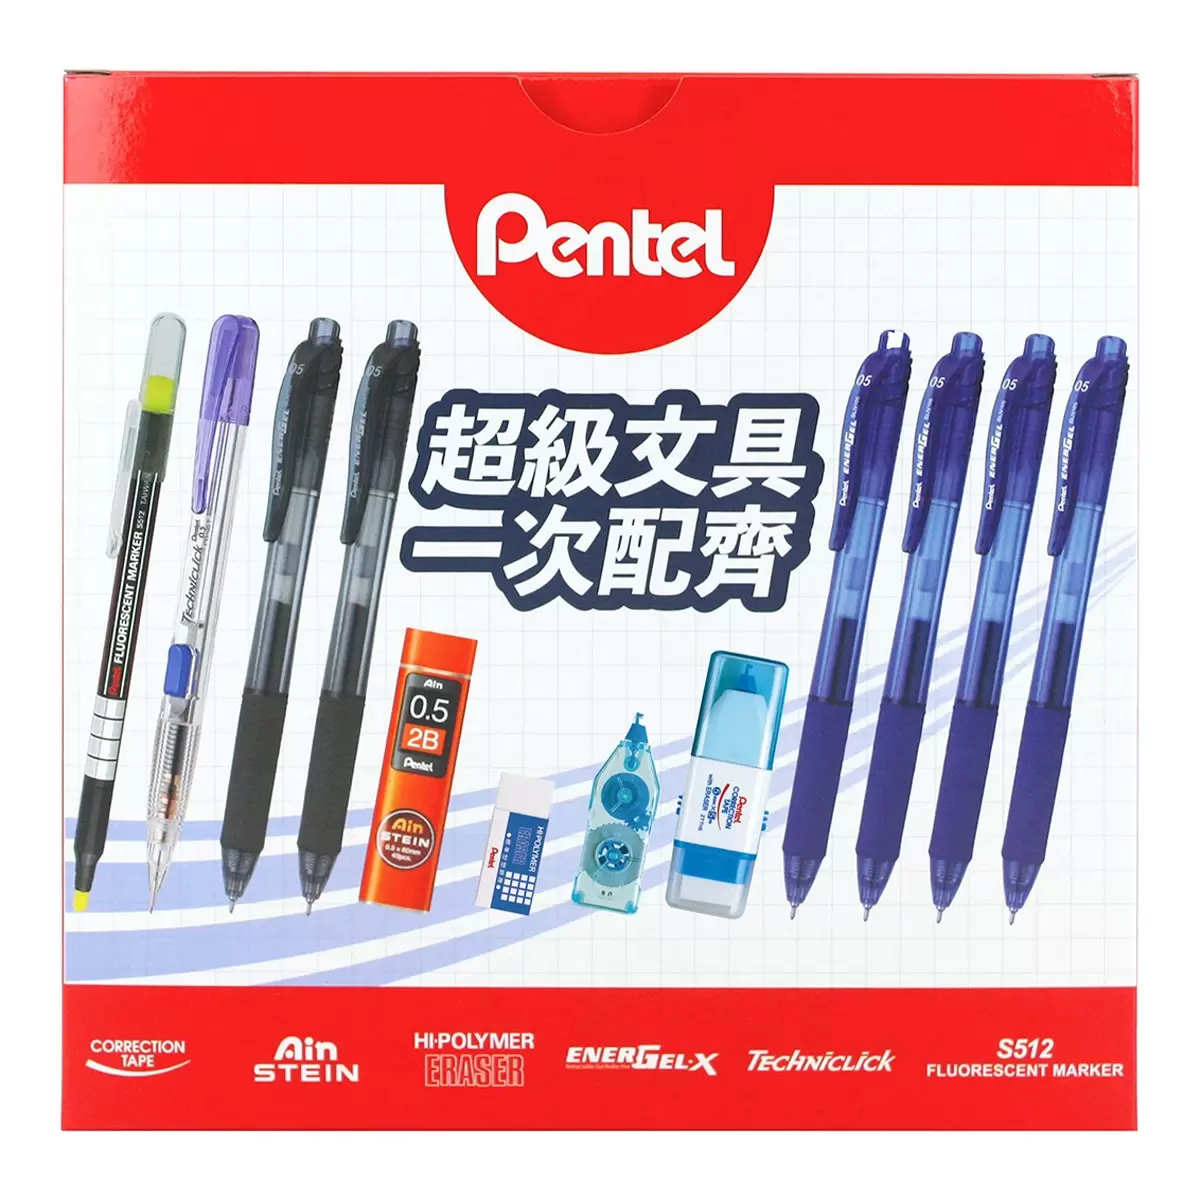 Pentel 綜合文具組 12件入